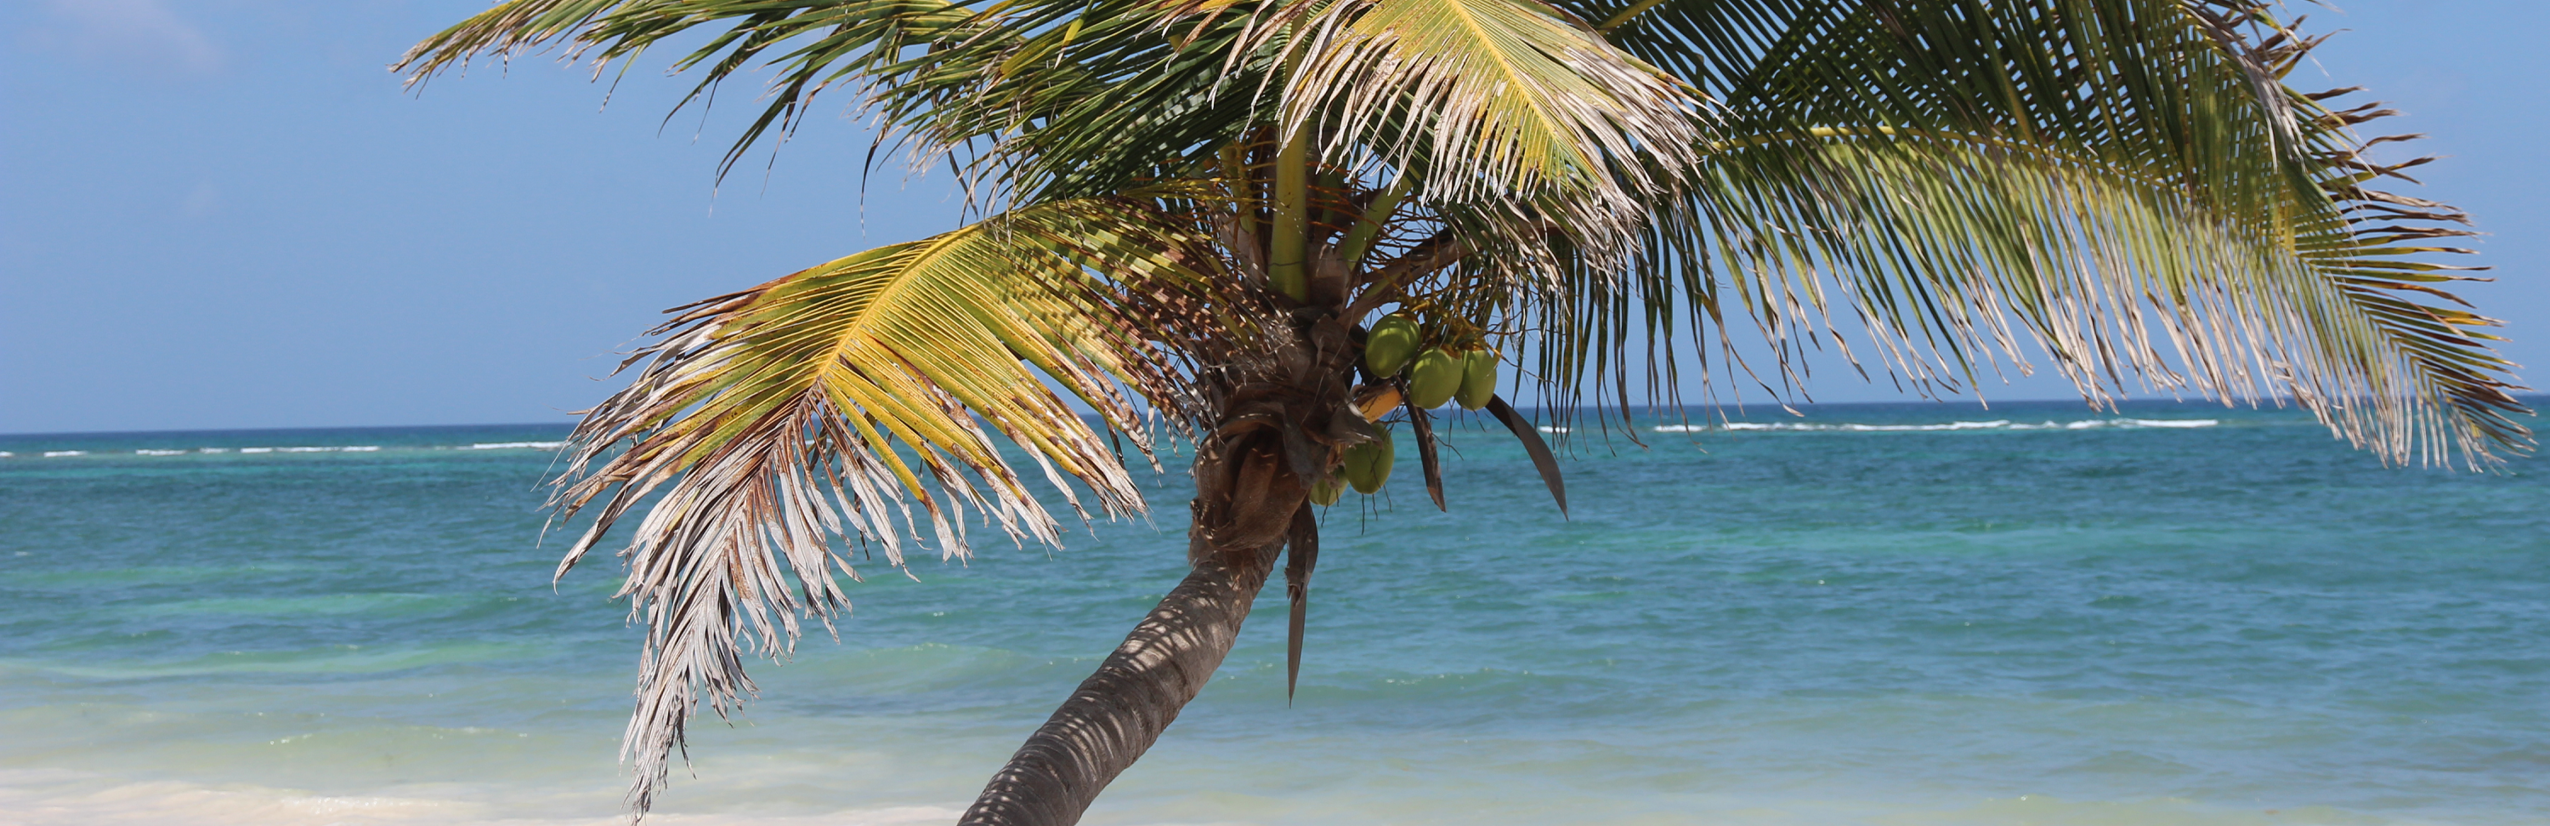 Familienurlaub Mexiko Yucatán - Mexiko mit Kindern Erfahrungen - Strand von Tulum